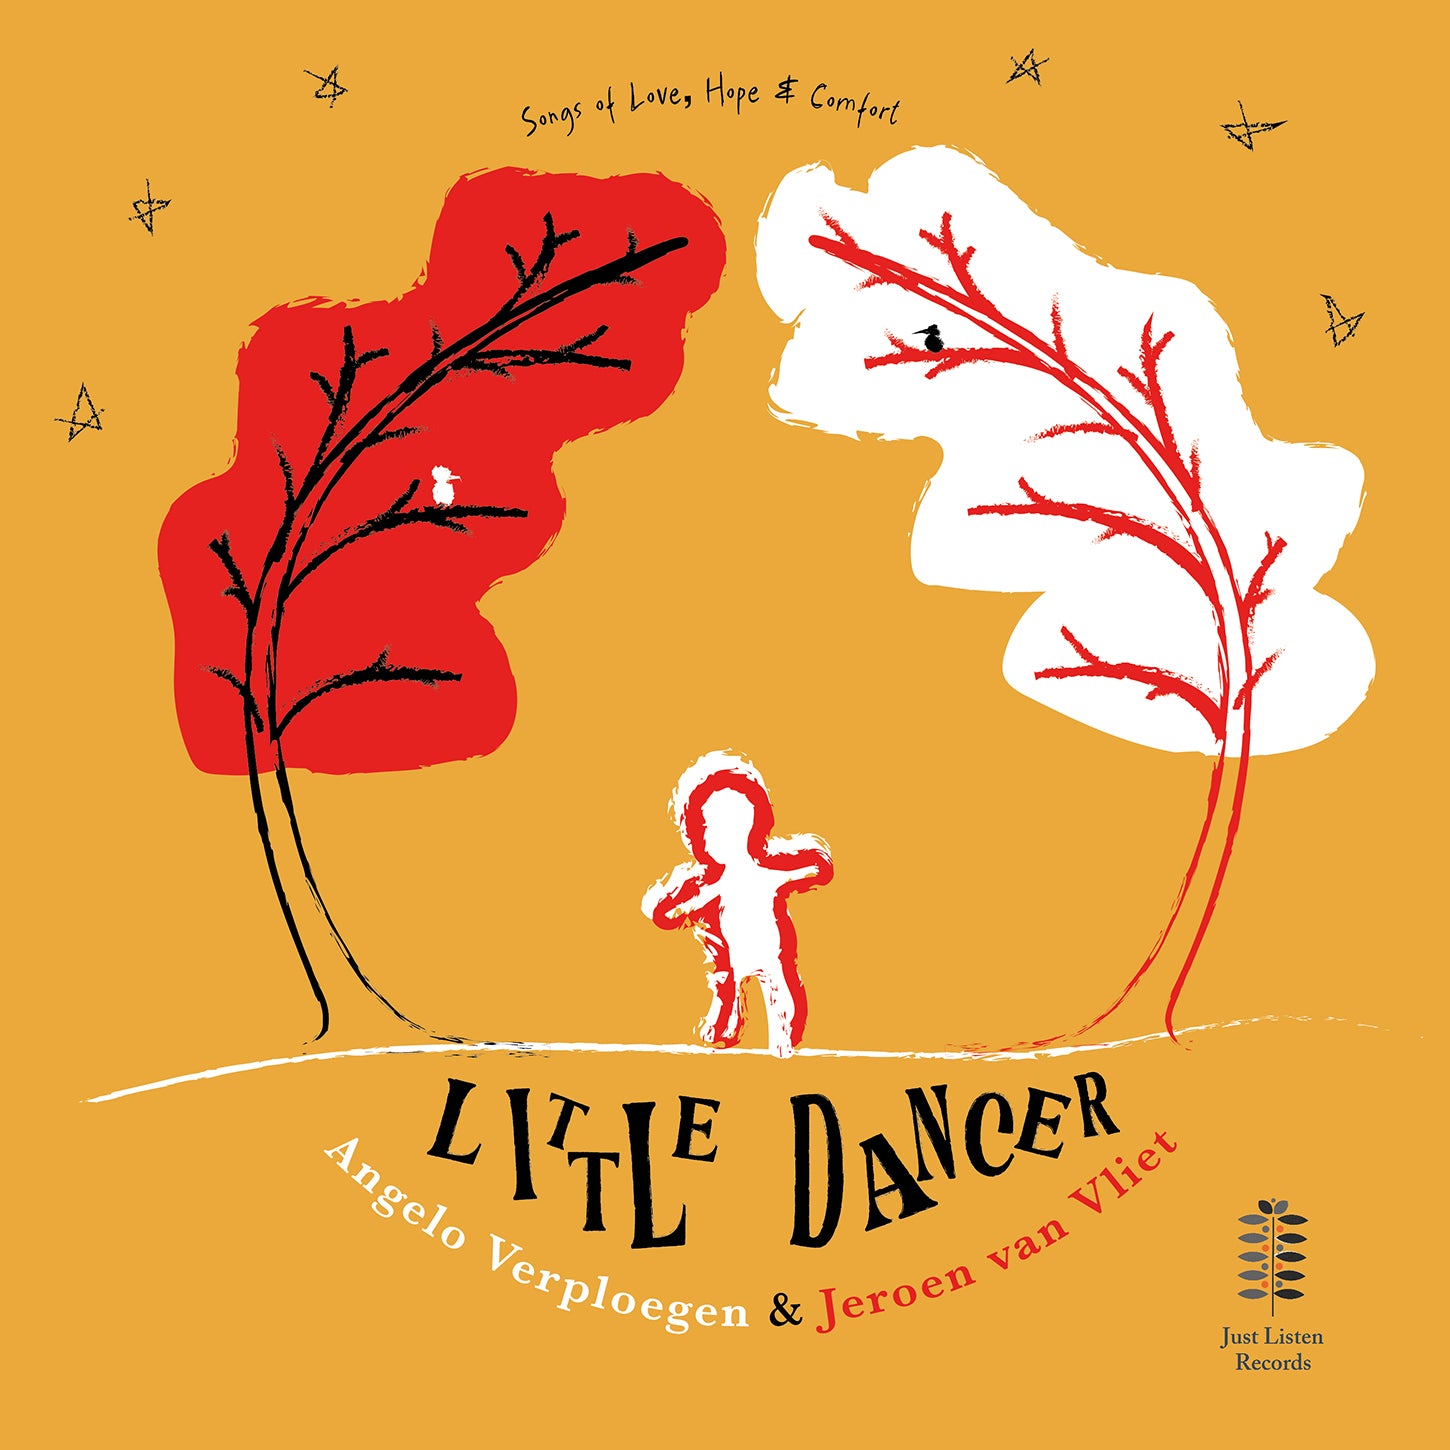 Little Dancer - Songs of Love, Hope & Comfort / Verploegen, van Vliet